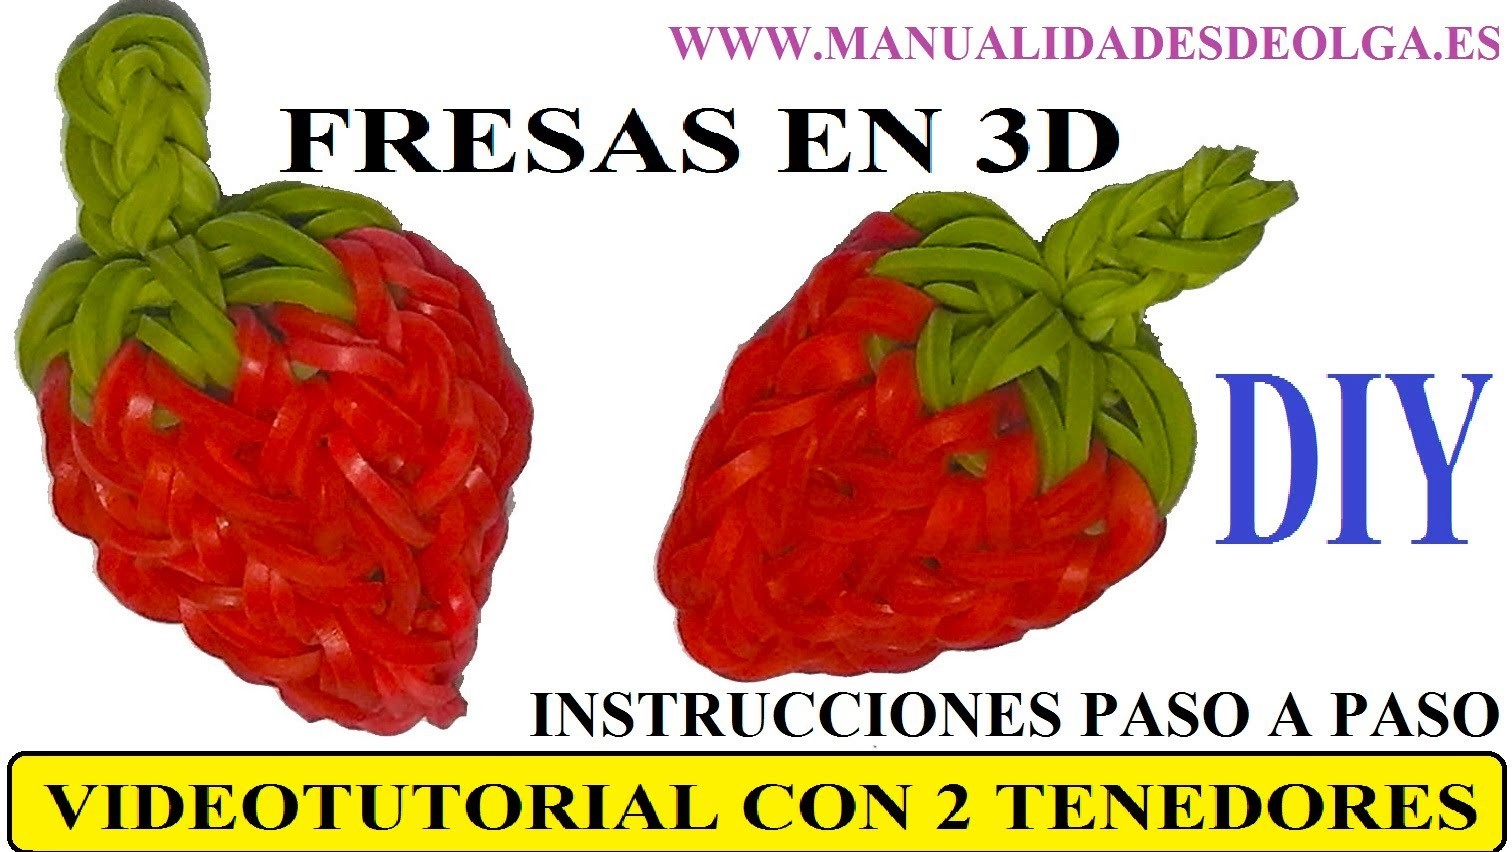 COMO HACER UNA FRESA 3D DE GOMITAS (LIGAS) CHARMS CON DOS TENEDORES. VIDEOTUTORIAL DIY.